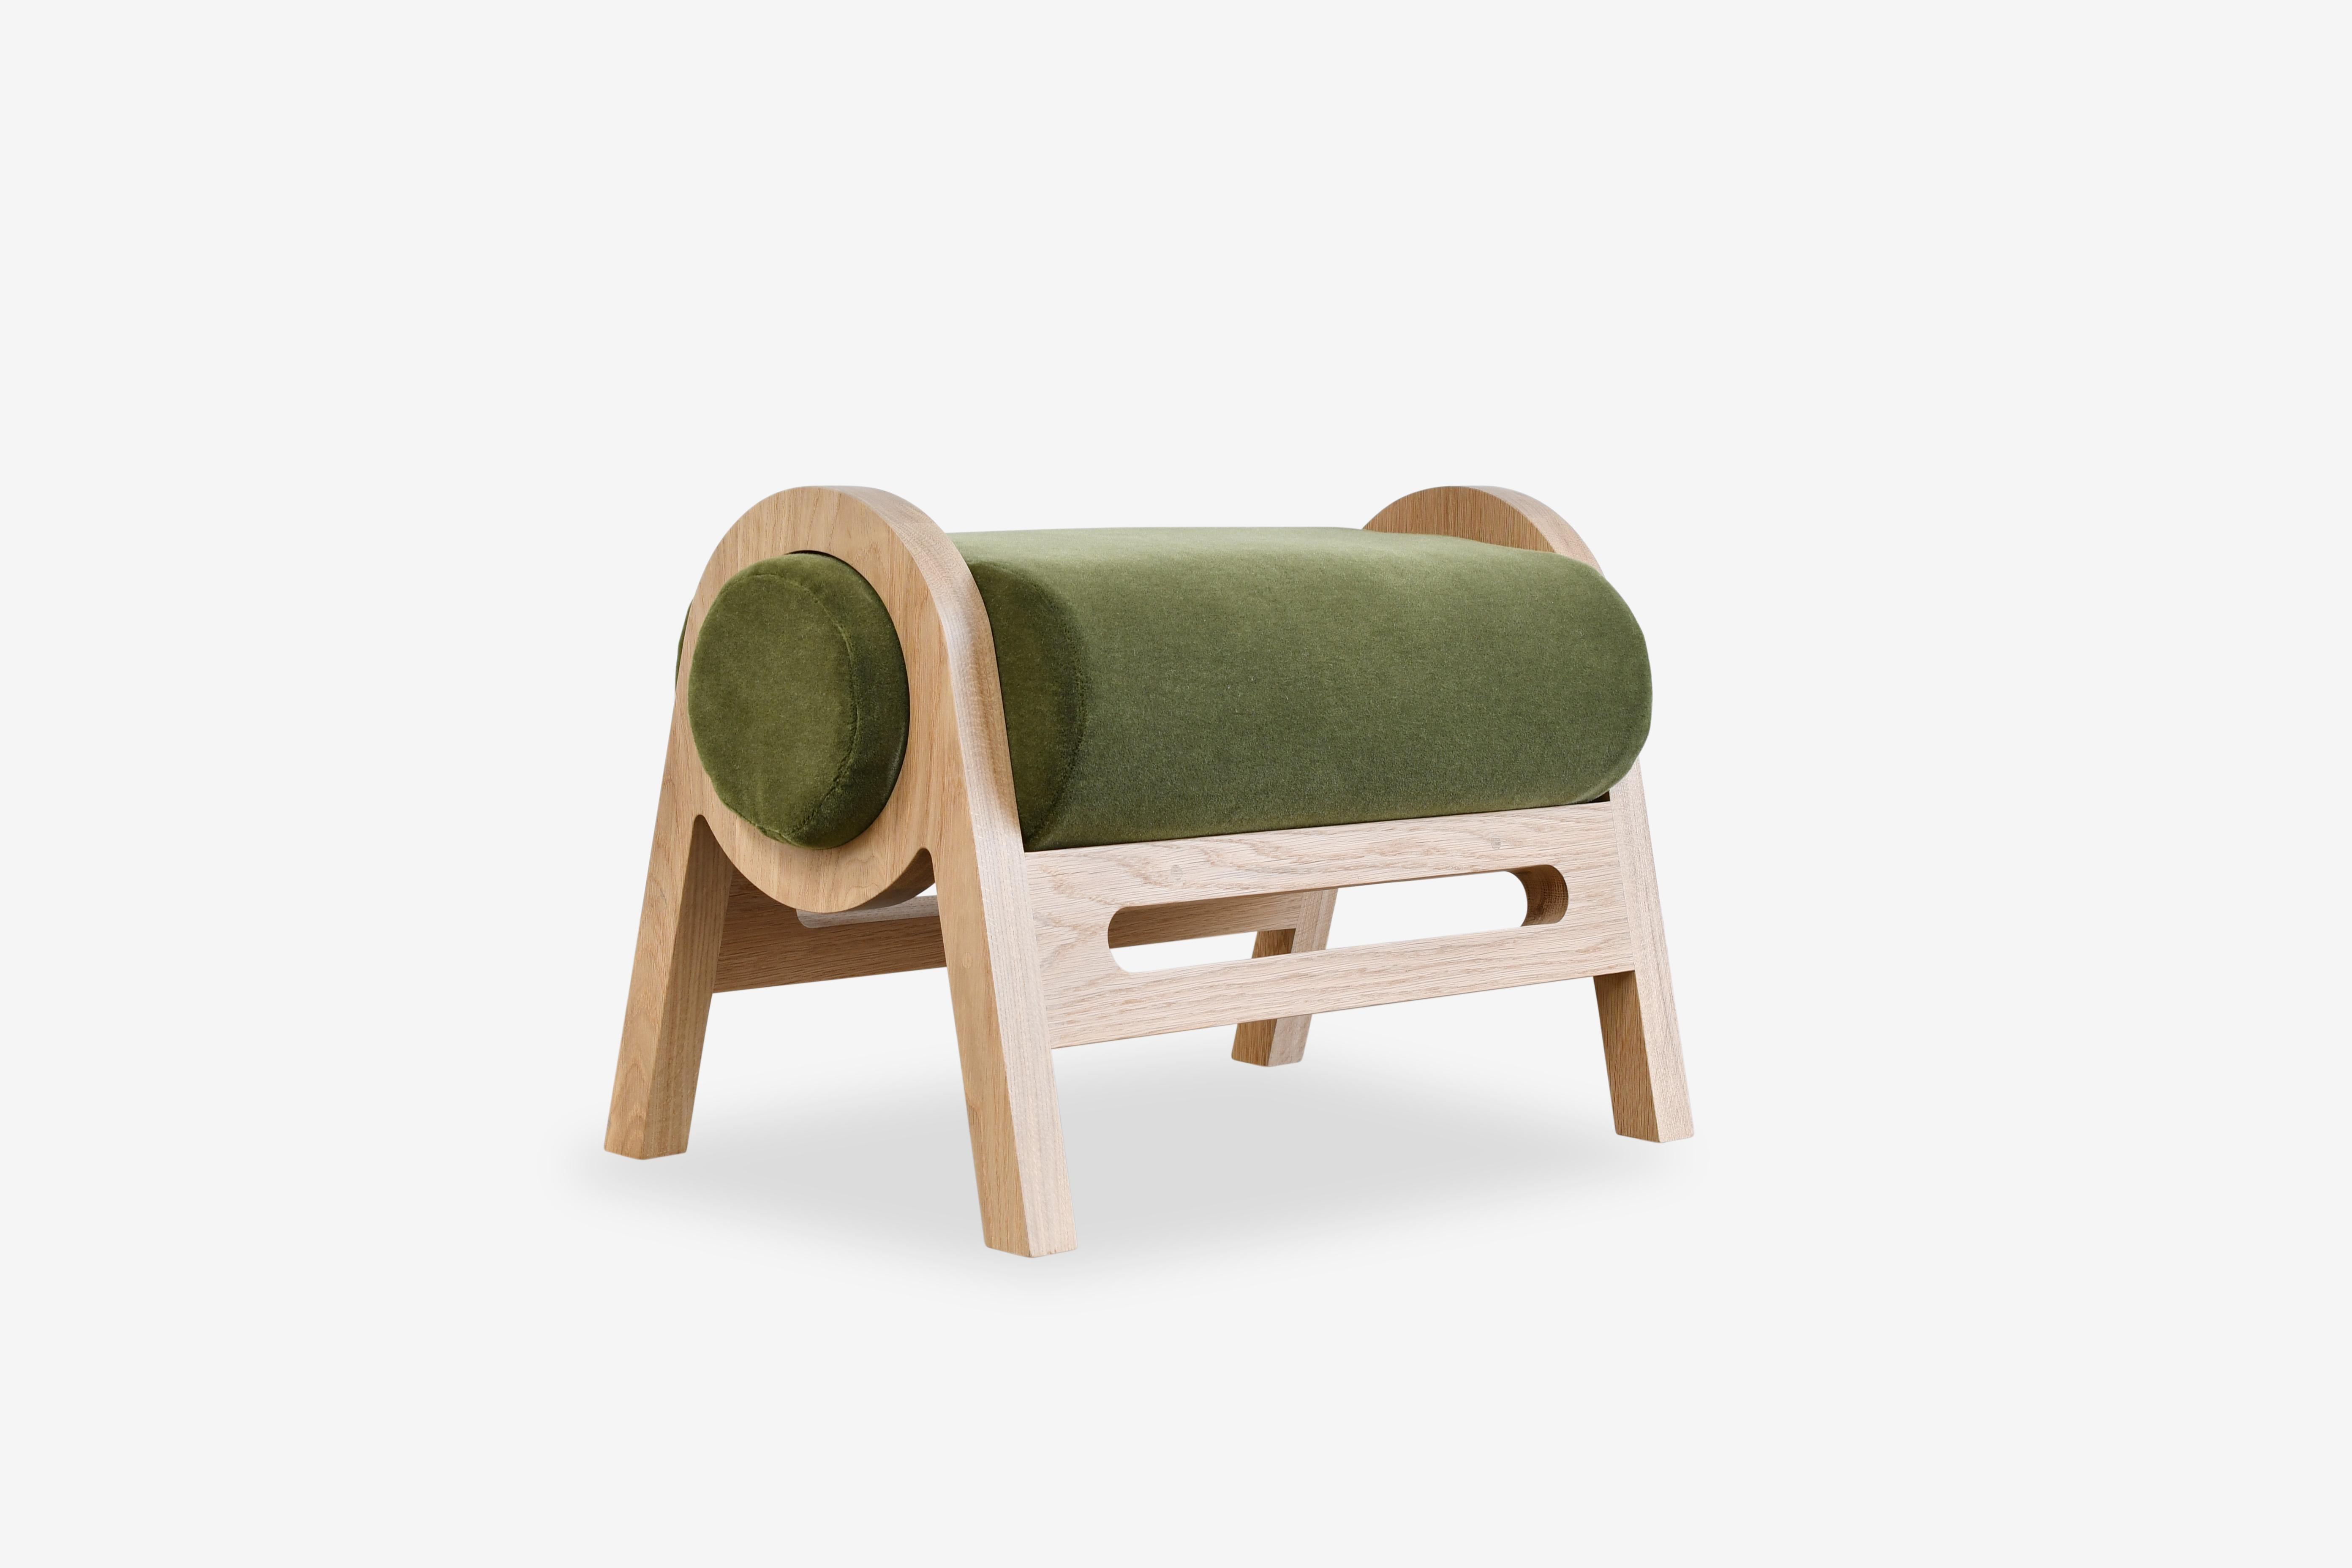 Der Silas Ottoman ist die perfekte Ergänzung zum Silas Lounge Chair mit seiner Konfiguration des freiliegenden Massivholzrahmens und der klassischen Geometrie. Die Elemente dieser Silhouette sind perfekt aufeinander abgestimmt
mit dem Stuhl oder als